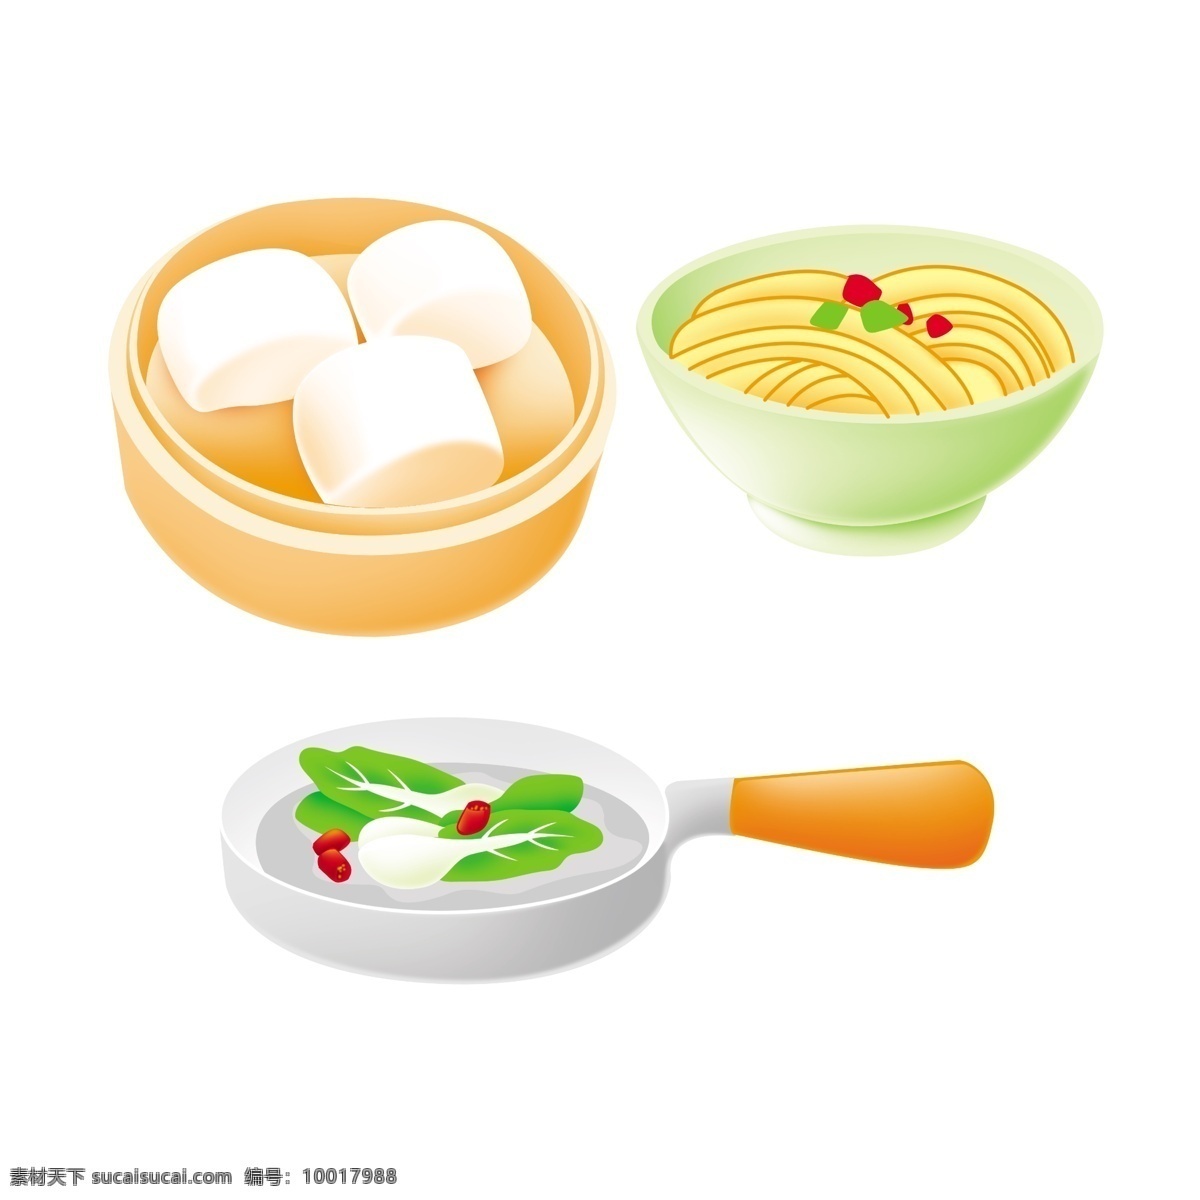 食物小图标 图标 蒸笼 馒头 平底锅 蔬菜 食物 分层